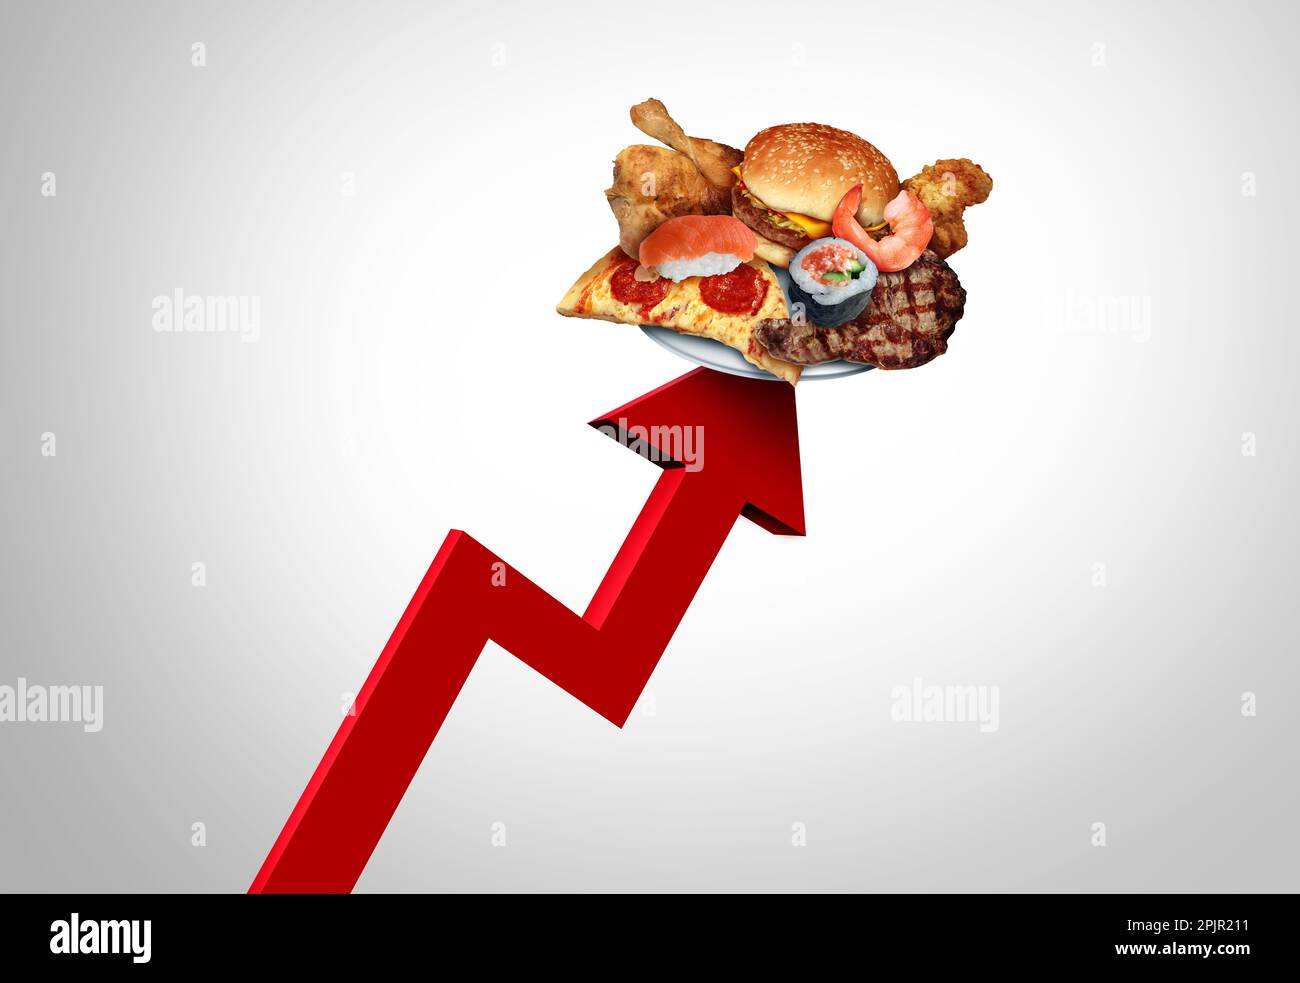 Steigende Restaurantpreise und Essenskosten als Symbol für die hohen Preise von Restaurants aufgrund von Inflation und Arbeitskosten. Stockfoto